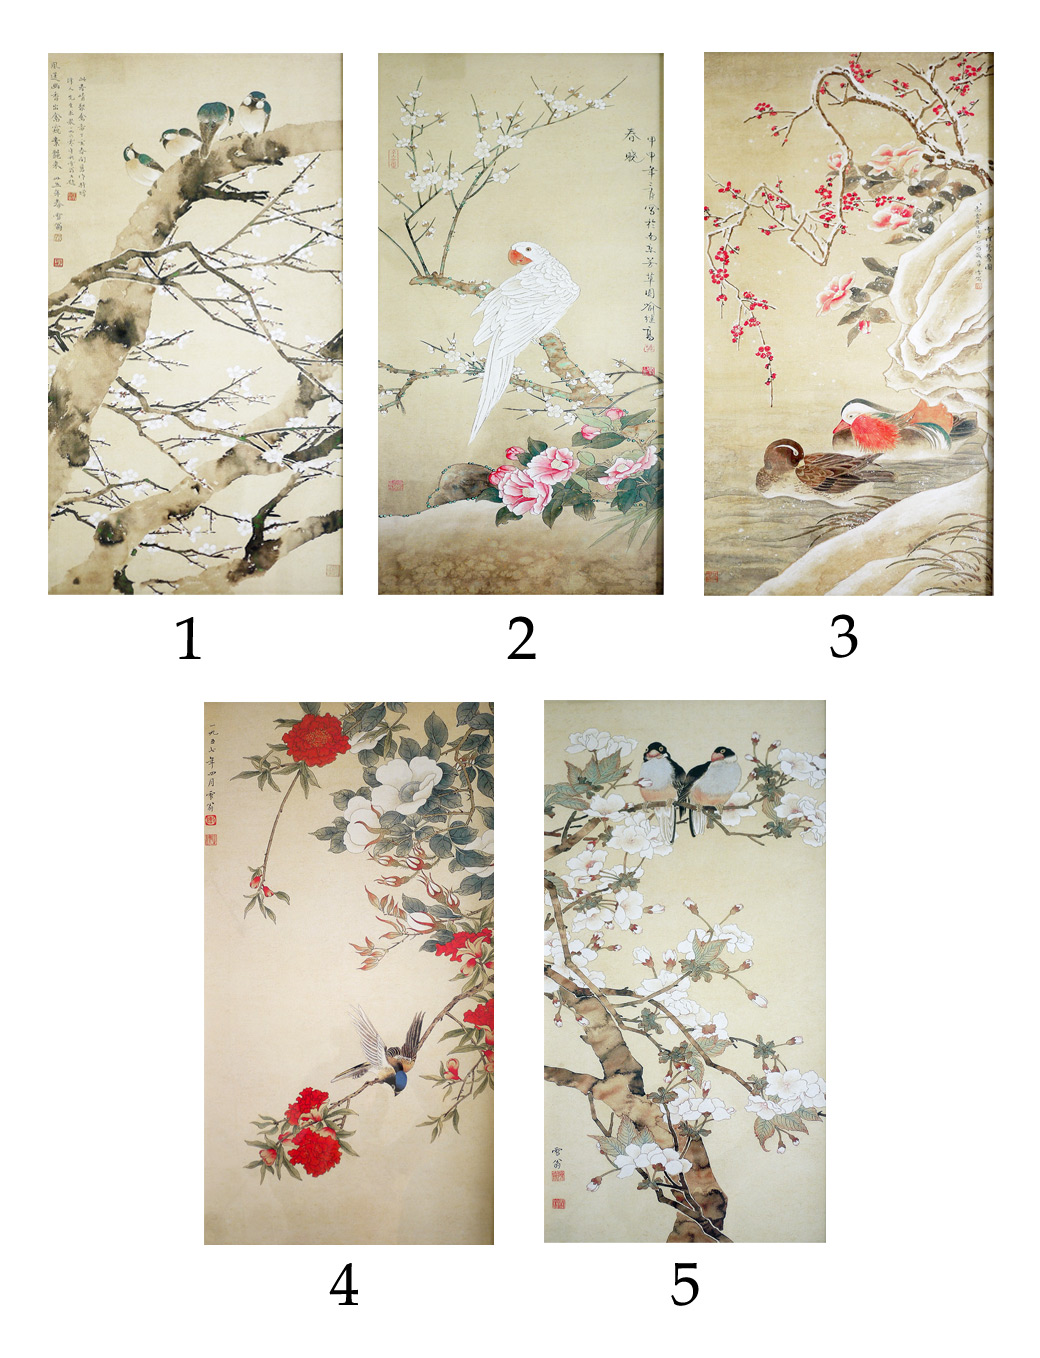 ภาพตกแต่งผนังสไตล์จีนญี่ปุ่นโอเรียนทอลรูปนกและดอกไม้